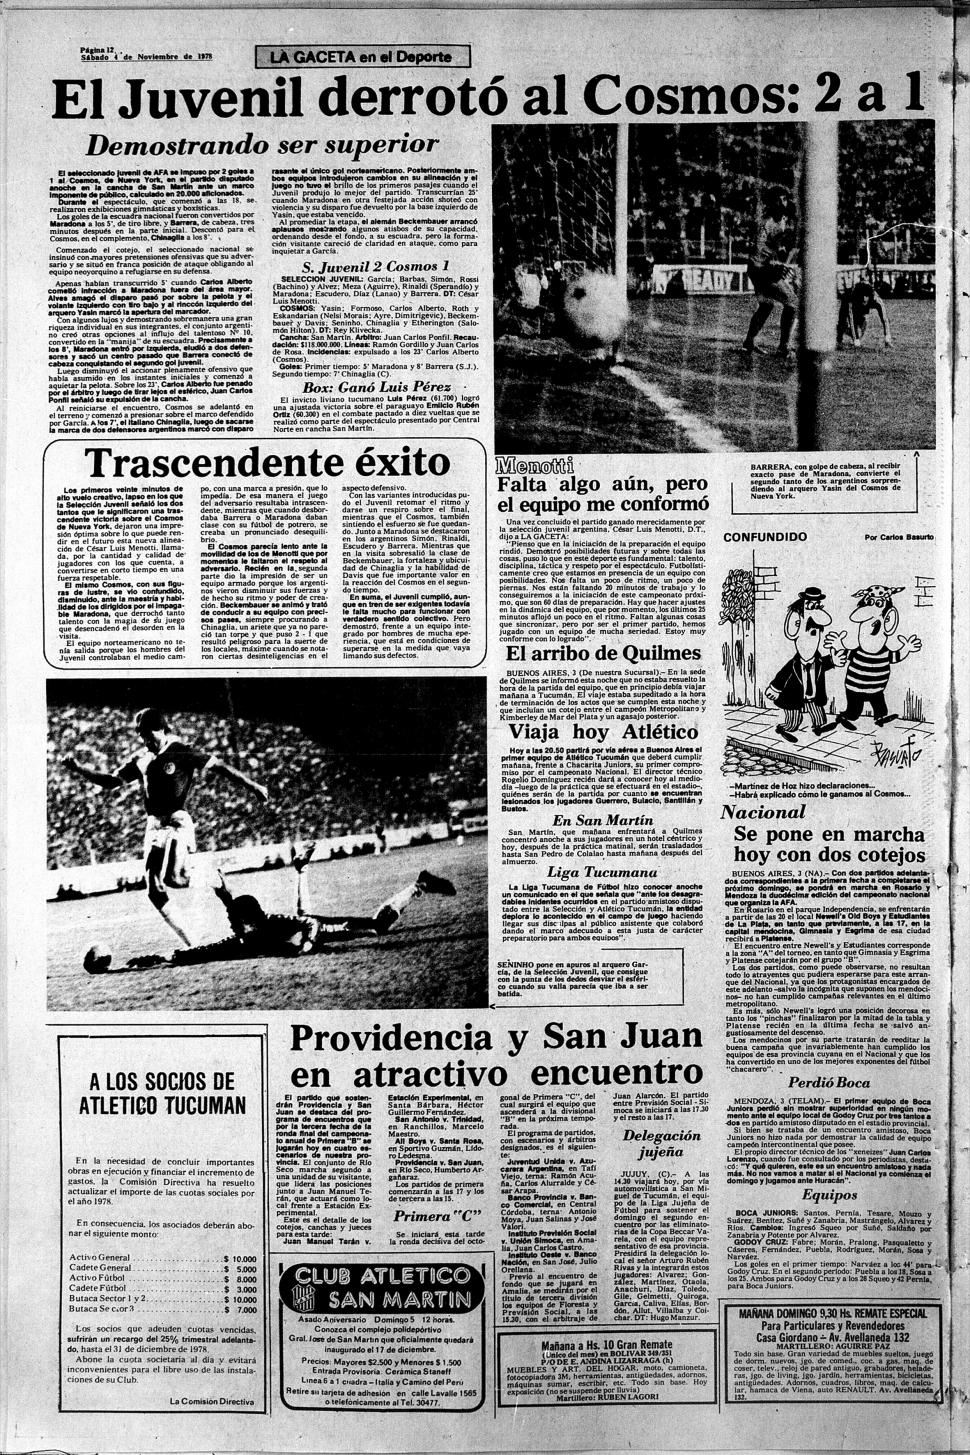 EN ACCIÓN. Más de 20.000 personas fueron testigos de la exhibición futbolística entre el Seleccionado argentino sub-20 y Cosmos.